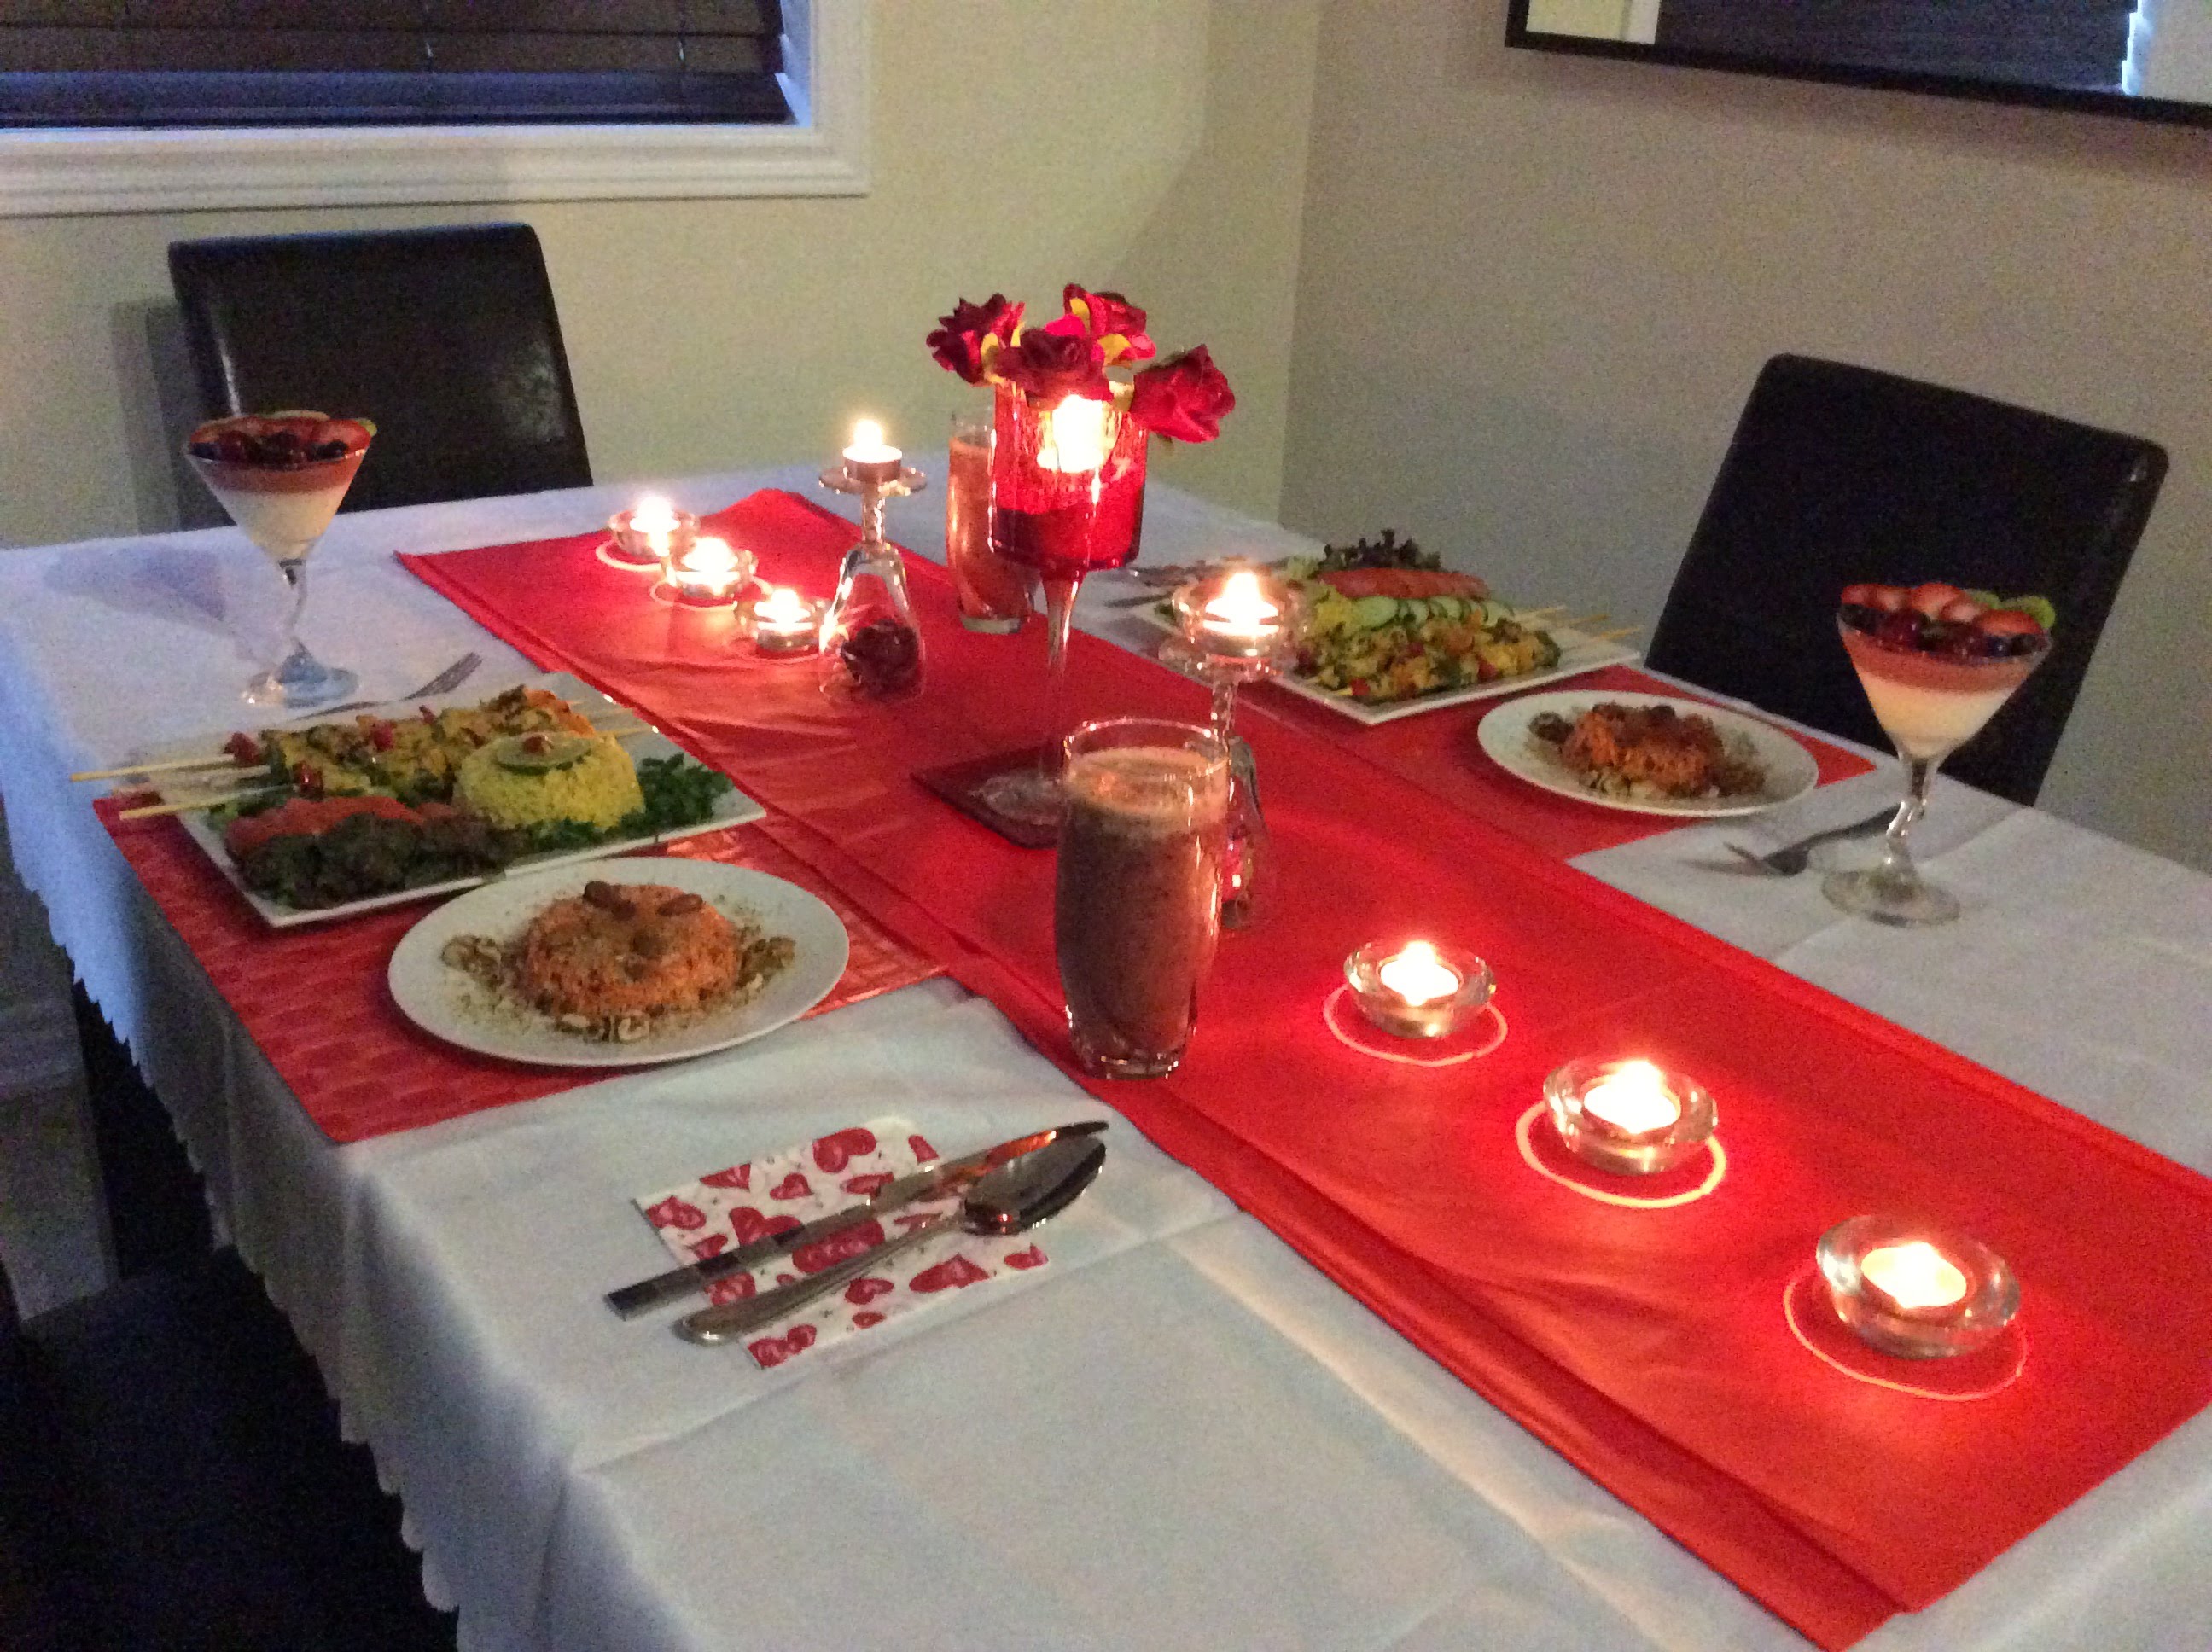 عشاء رومانسي في البيت , اجمل اللحظات فى العشاء الرومانسى على ضوء الشموع